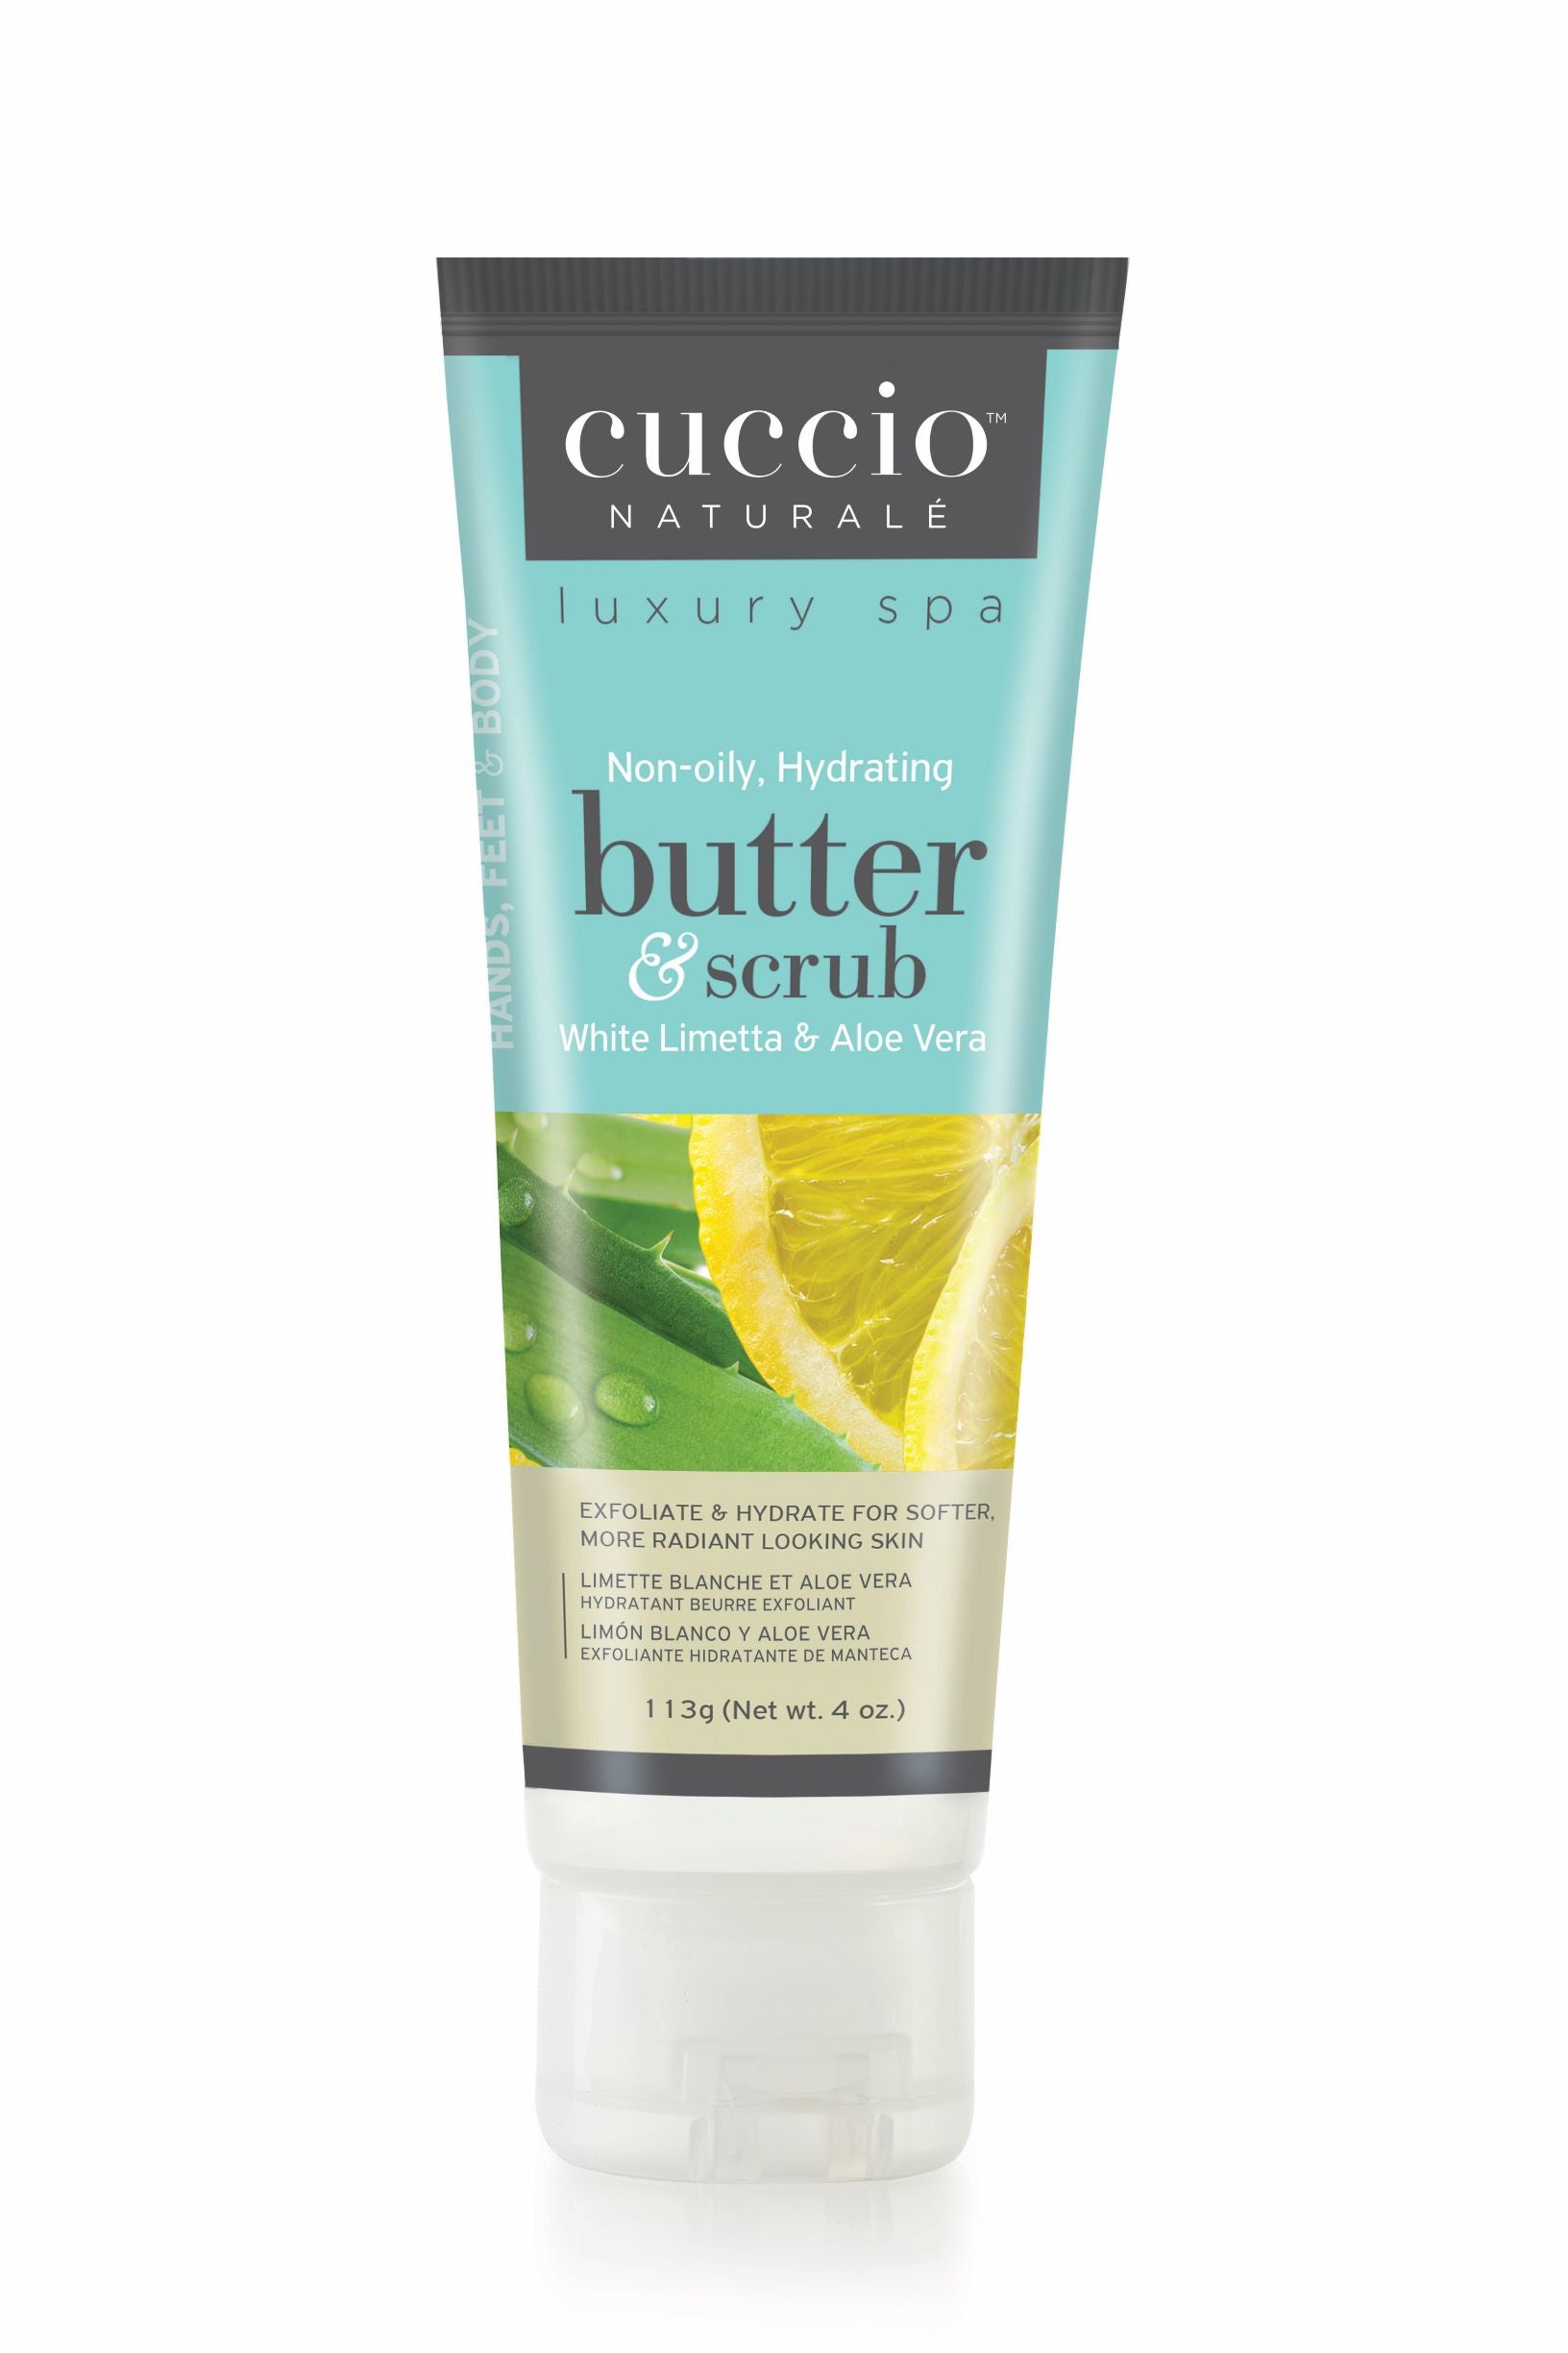 Butter & Scrub exfoliant au sucre limette blanche et aloès Vera de la marque Cuccio pour les mains, pieds et corps format 4oz.